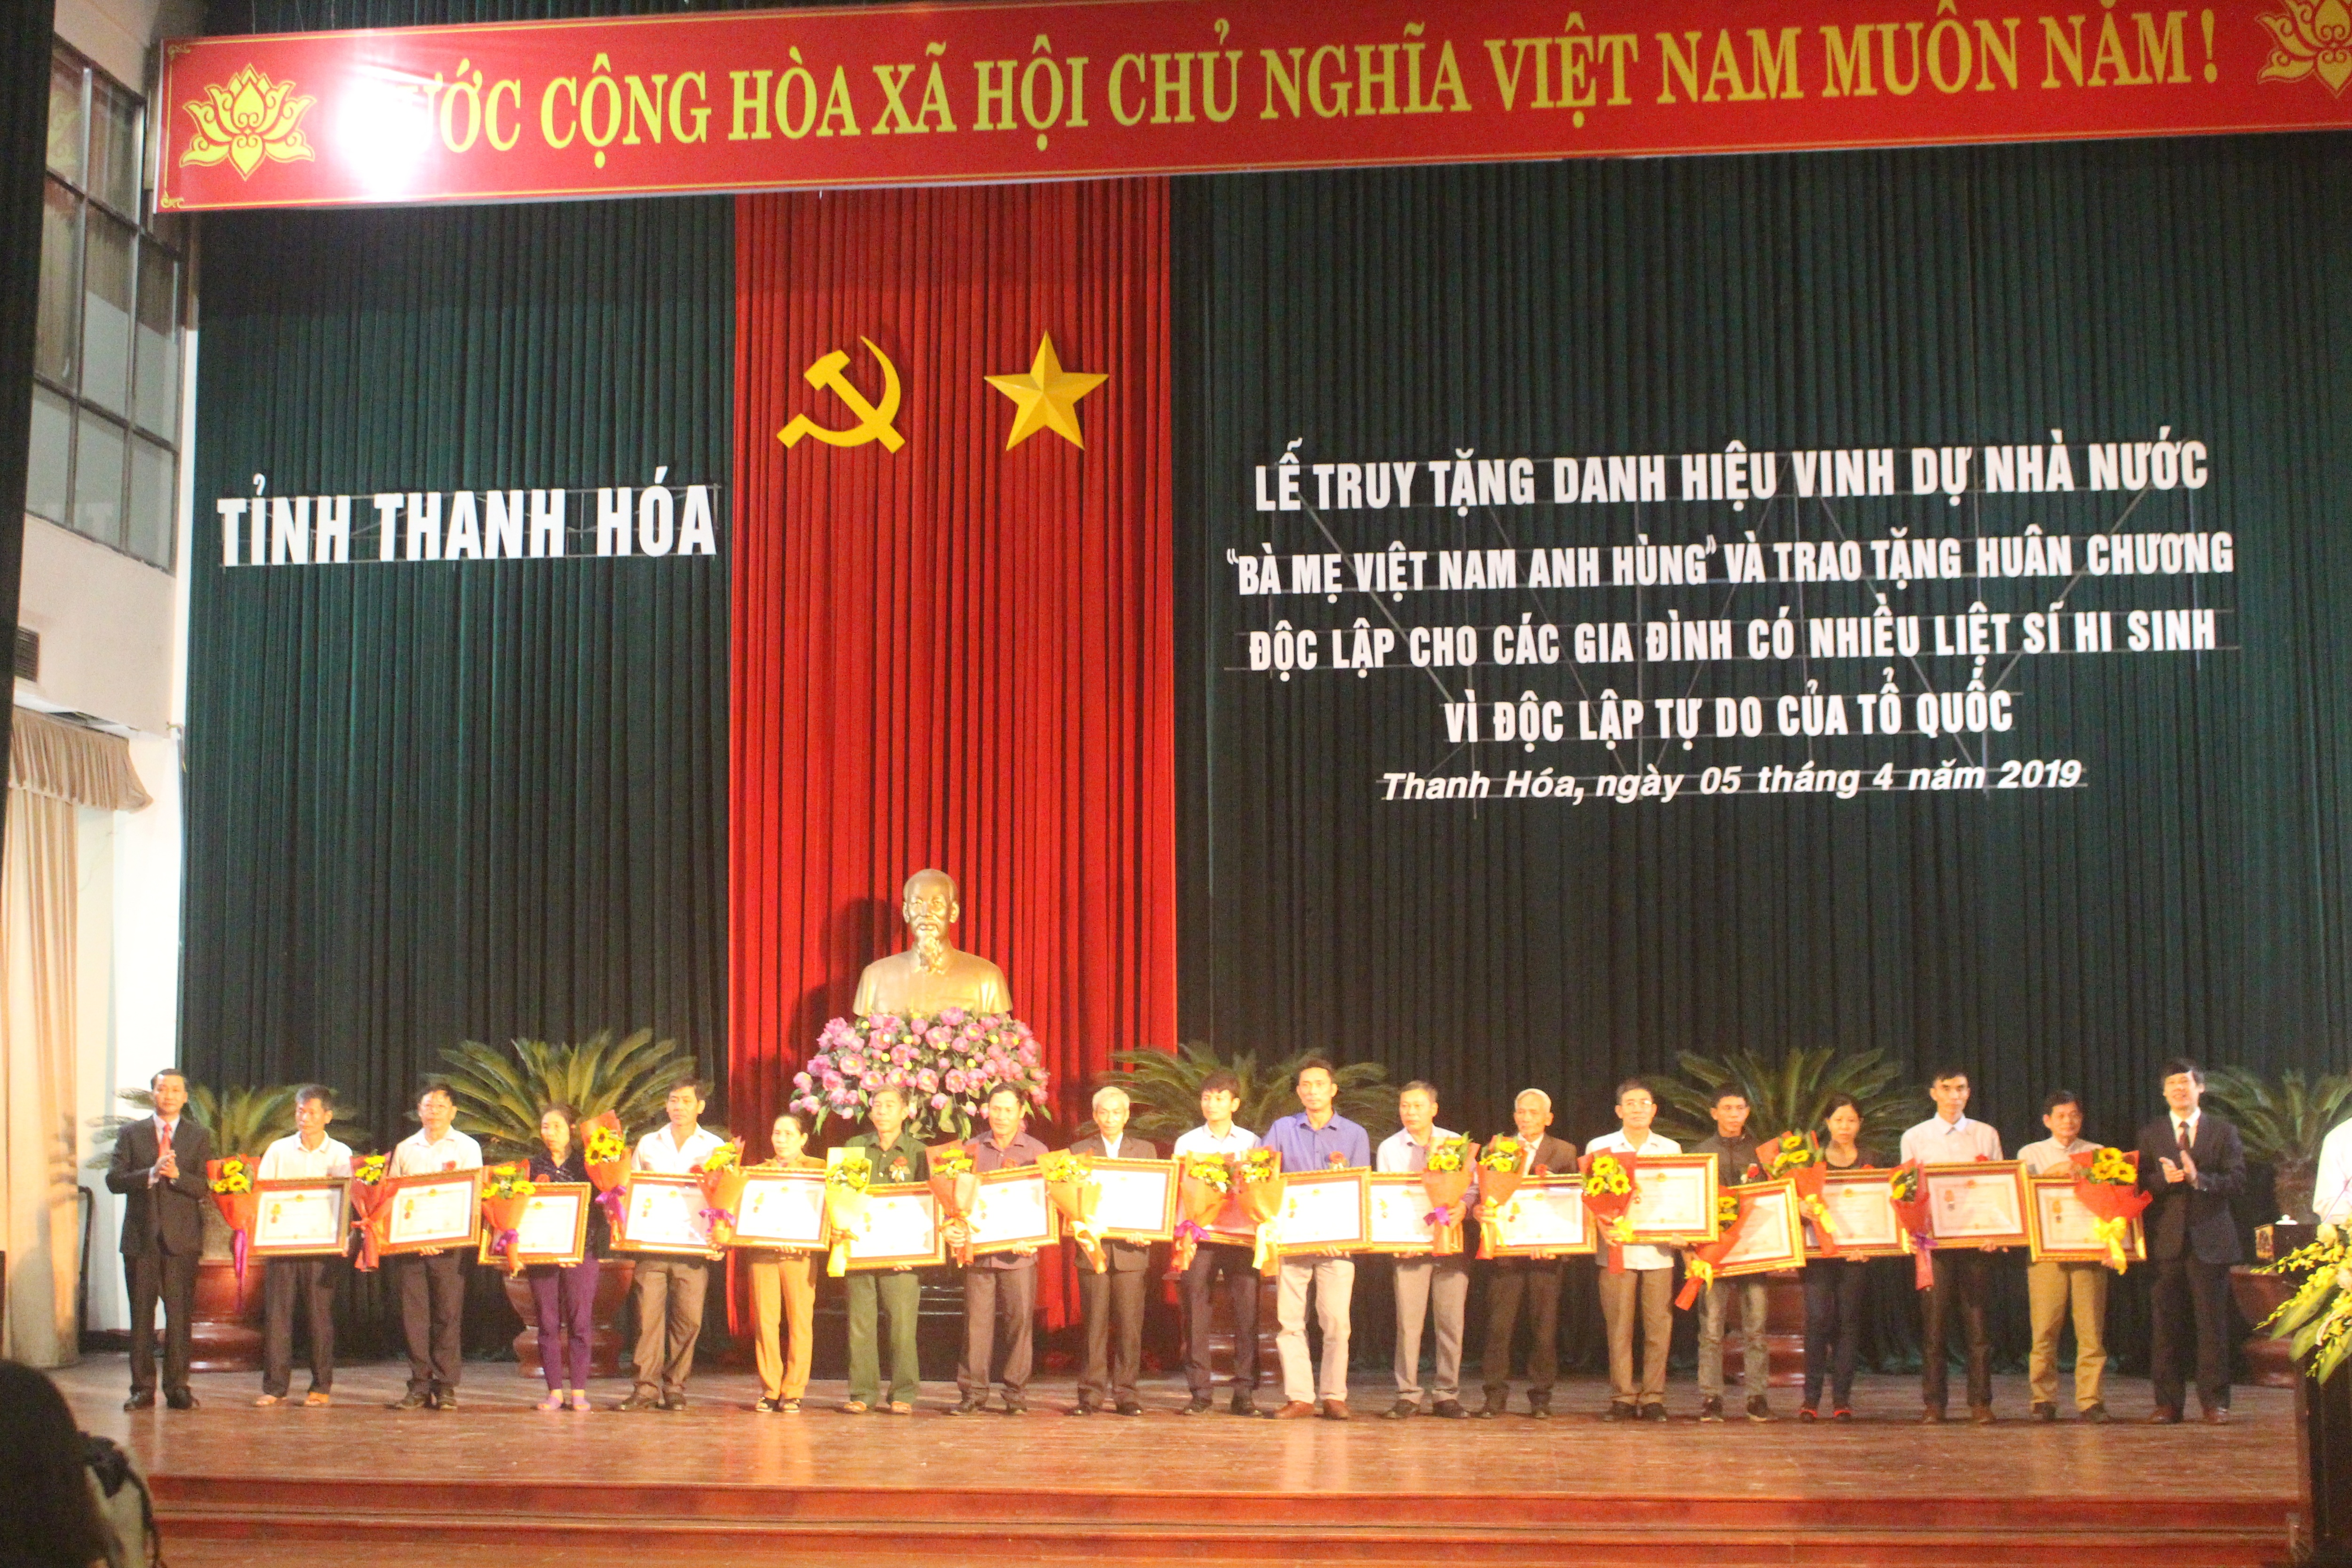 Truy tặng danh hiệu  “Bà mẹ Việt Nam Anh hùng” và trao tặng Huân chương cho gia đình có nhiều liệt sĩ